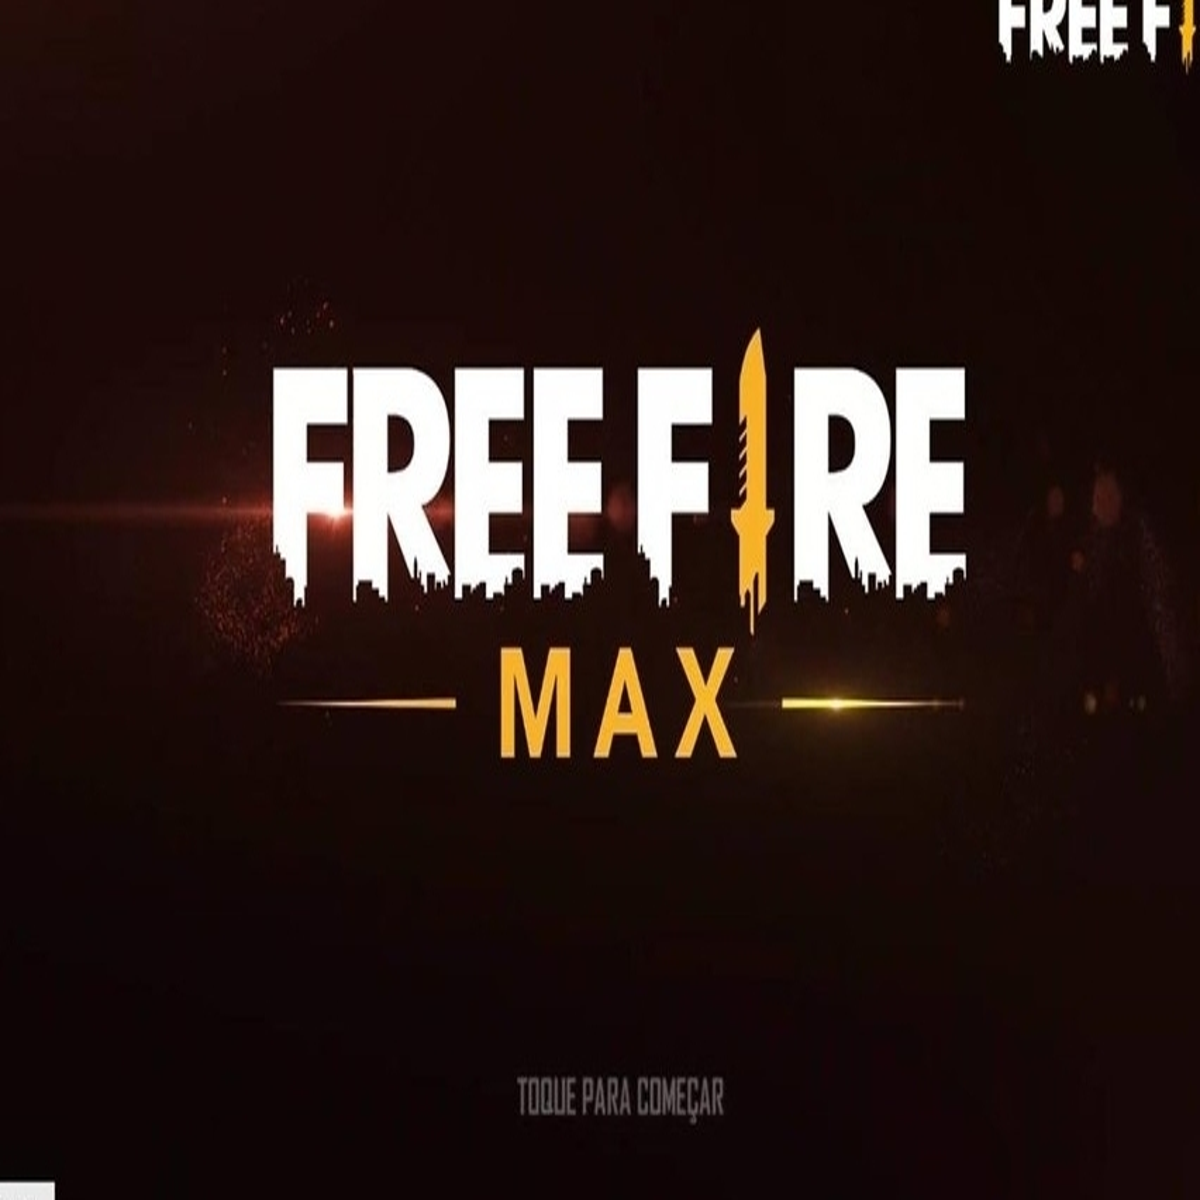 Free Fire Max: o que é e como baixar o jogo da Garena